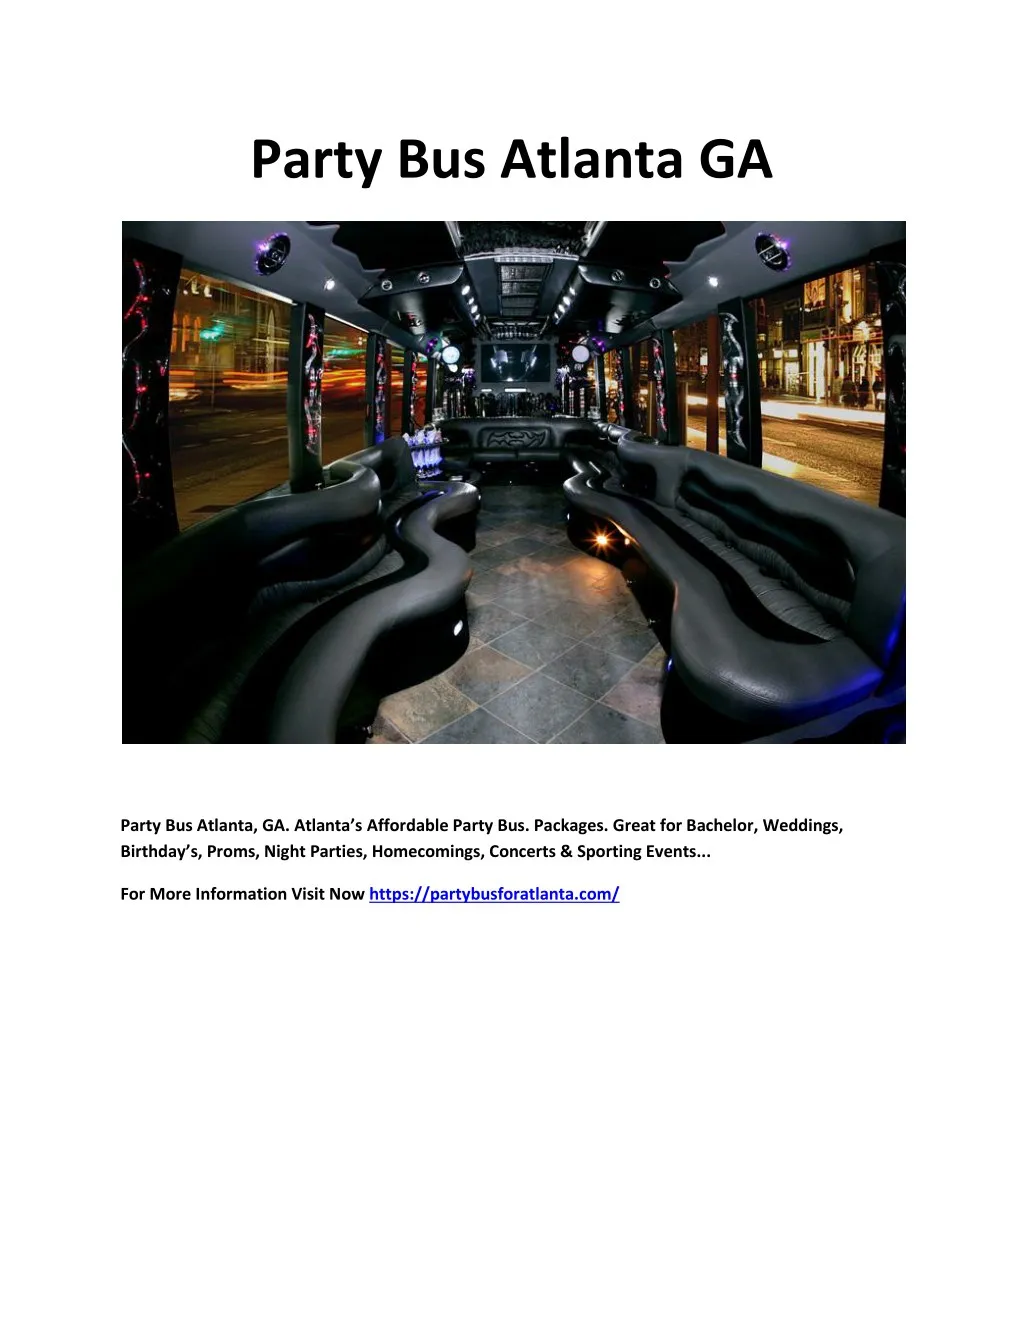 party bus atlanta ga